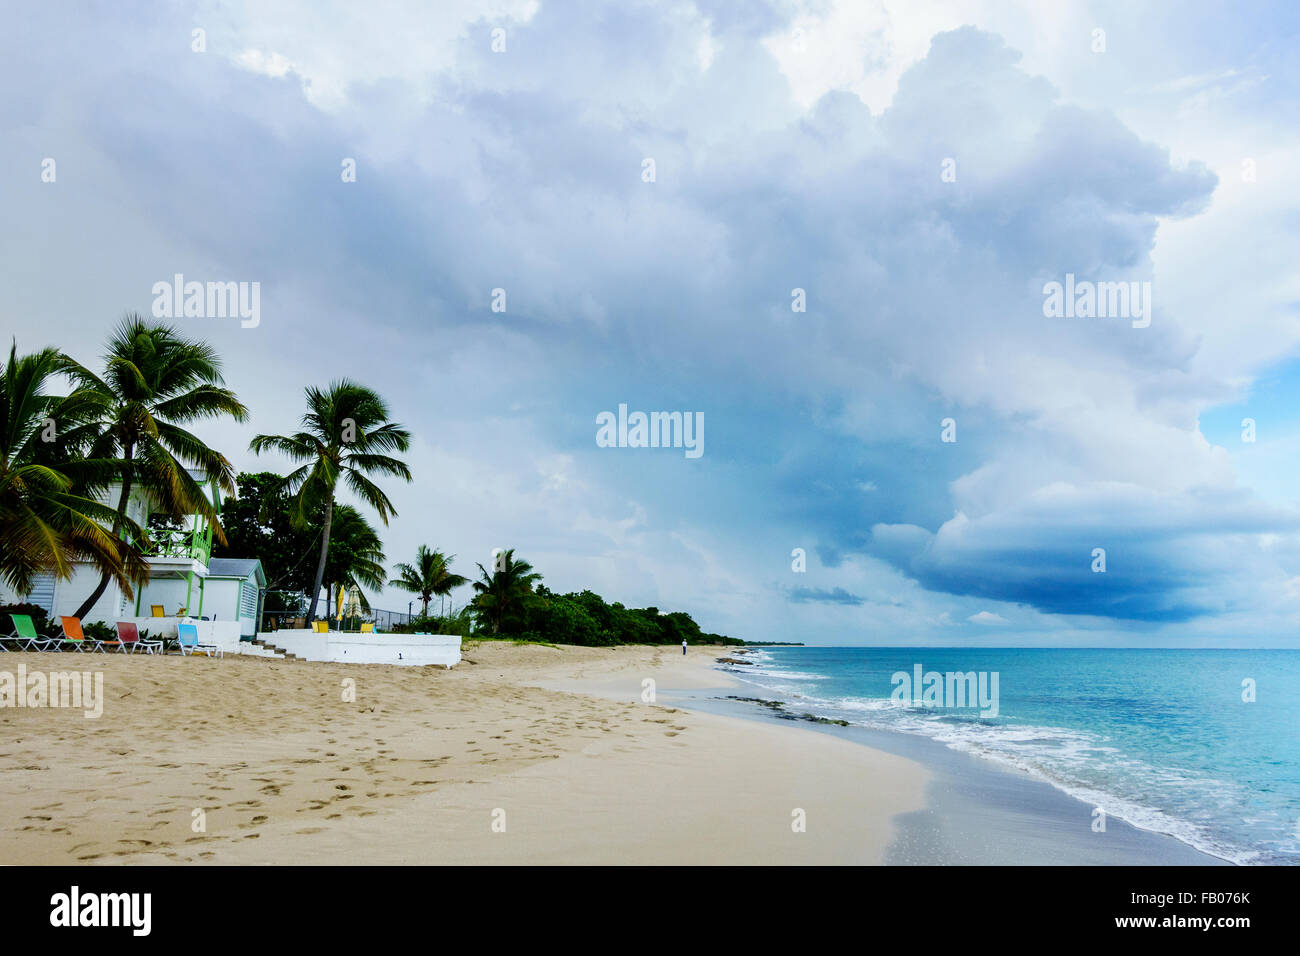 Un homme vu beachcombs à grande distance, sur l'île de Saint Croix, Îles Vierges des États-Unis. USVI, U.S.V.I. Cottages by the Sea Resort. Banque D'Images